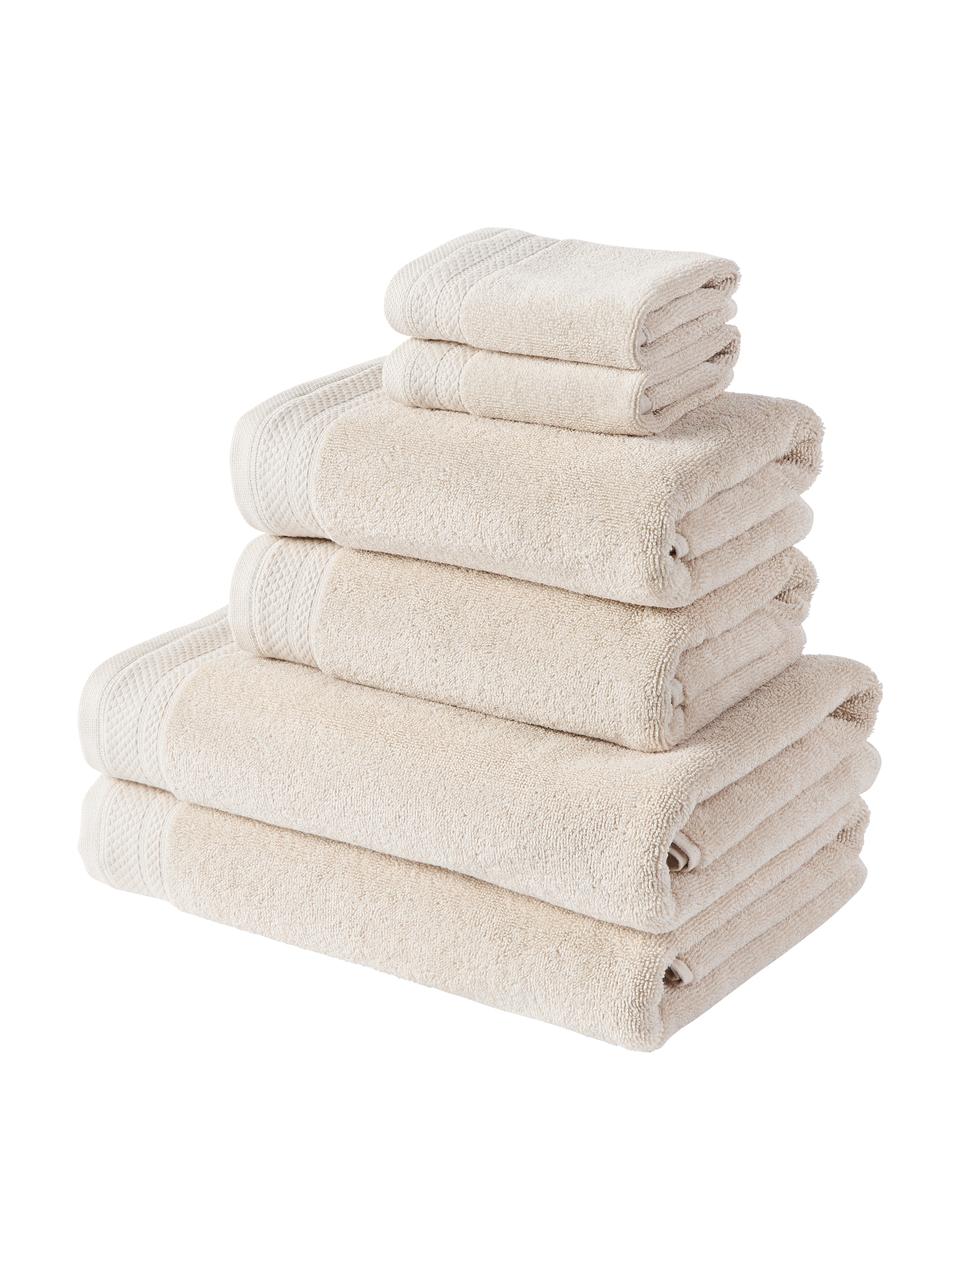 Súprava uterákov z organickej bavlny Premium, 6 diely, Svetlobéžová, Súprava s rôznymi veľkosťami